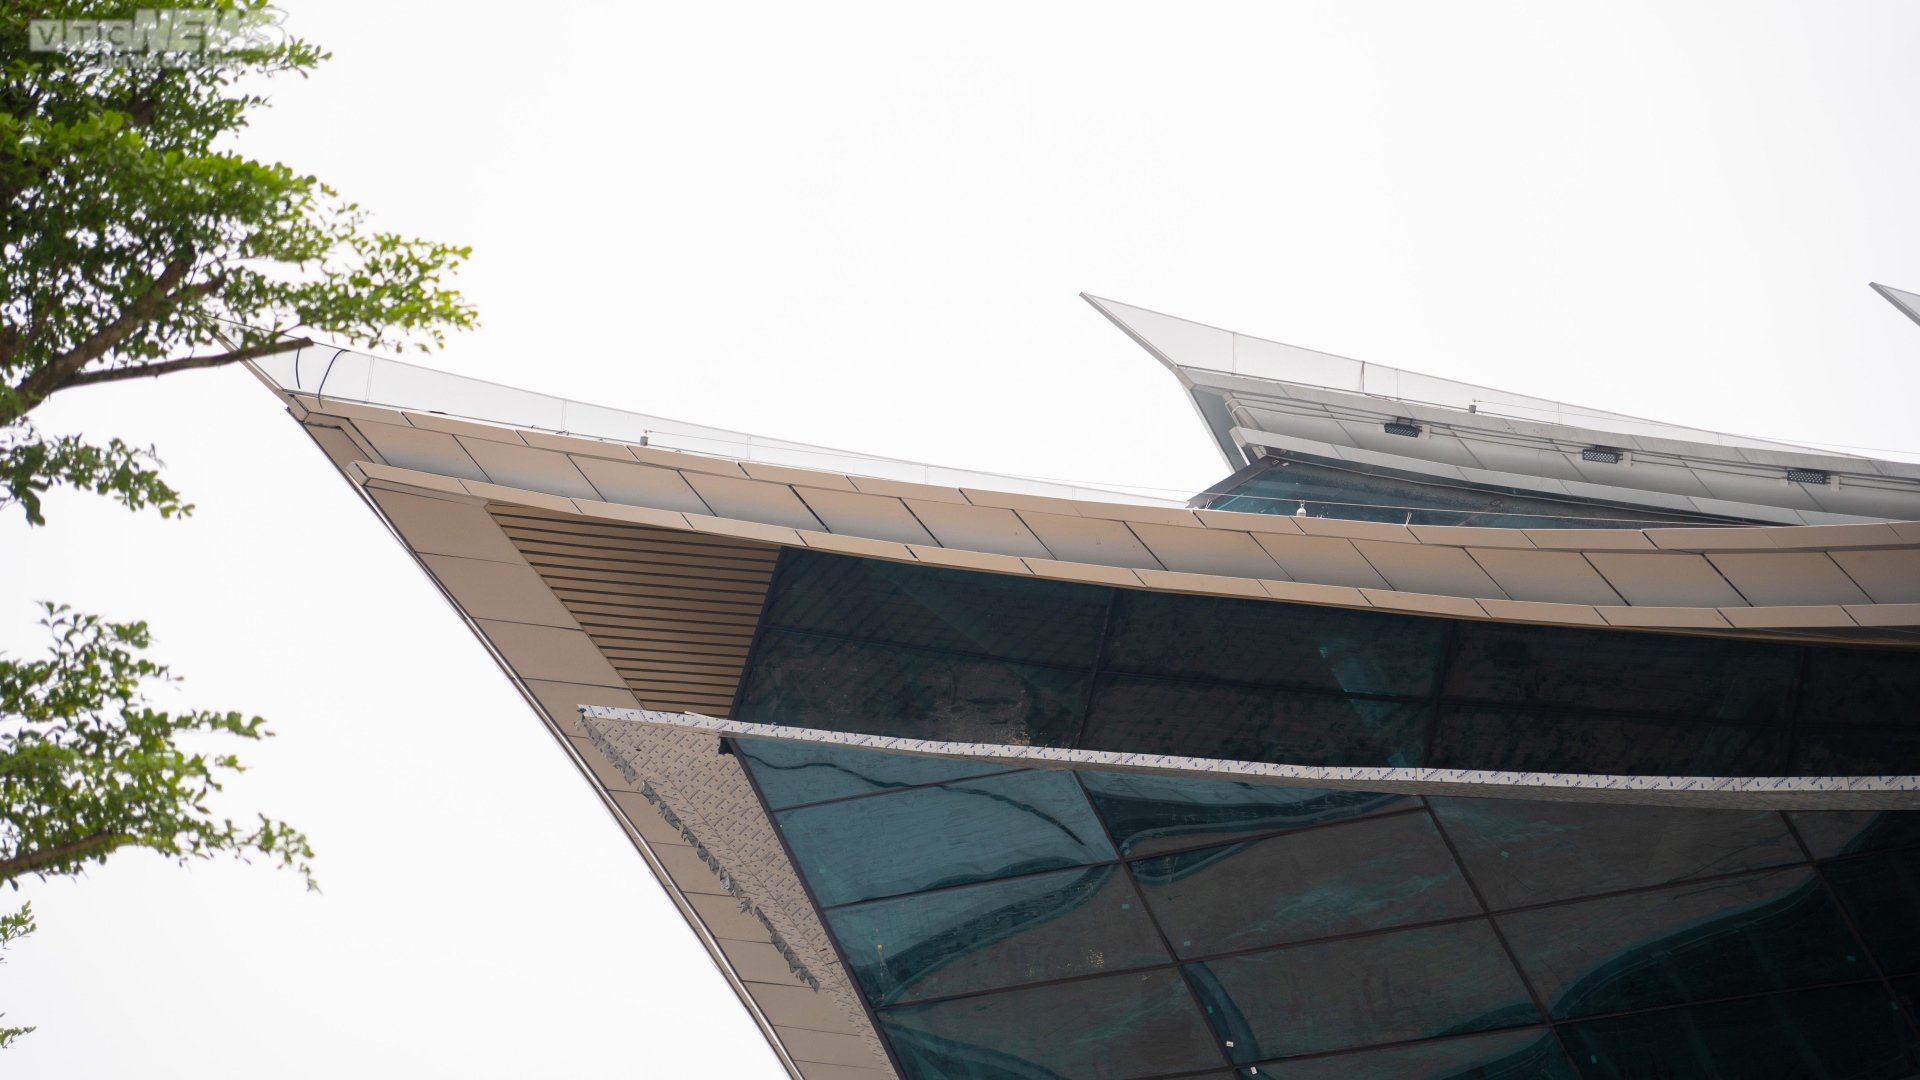 Cận cảnh nhà ga hàng không 2.200 tỷ mang kiến trúc cung đình Huế - Ảnh 3.